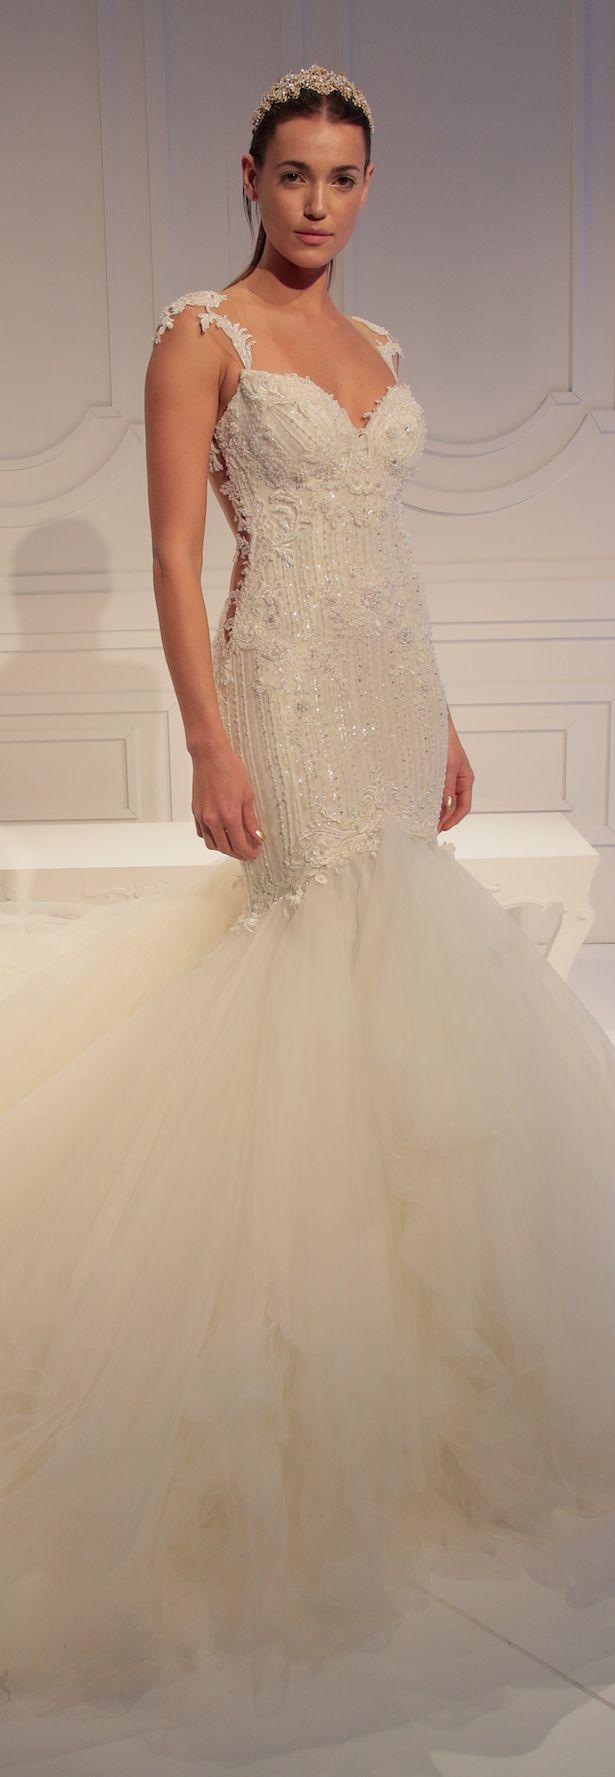 زفاف - Bridal Dress by Galia Lahav